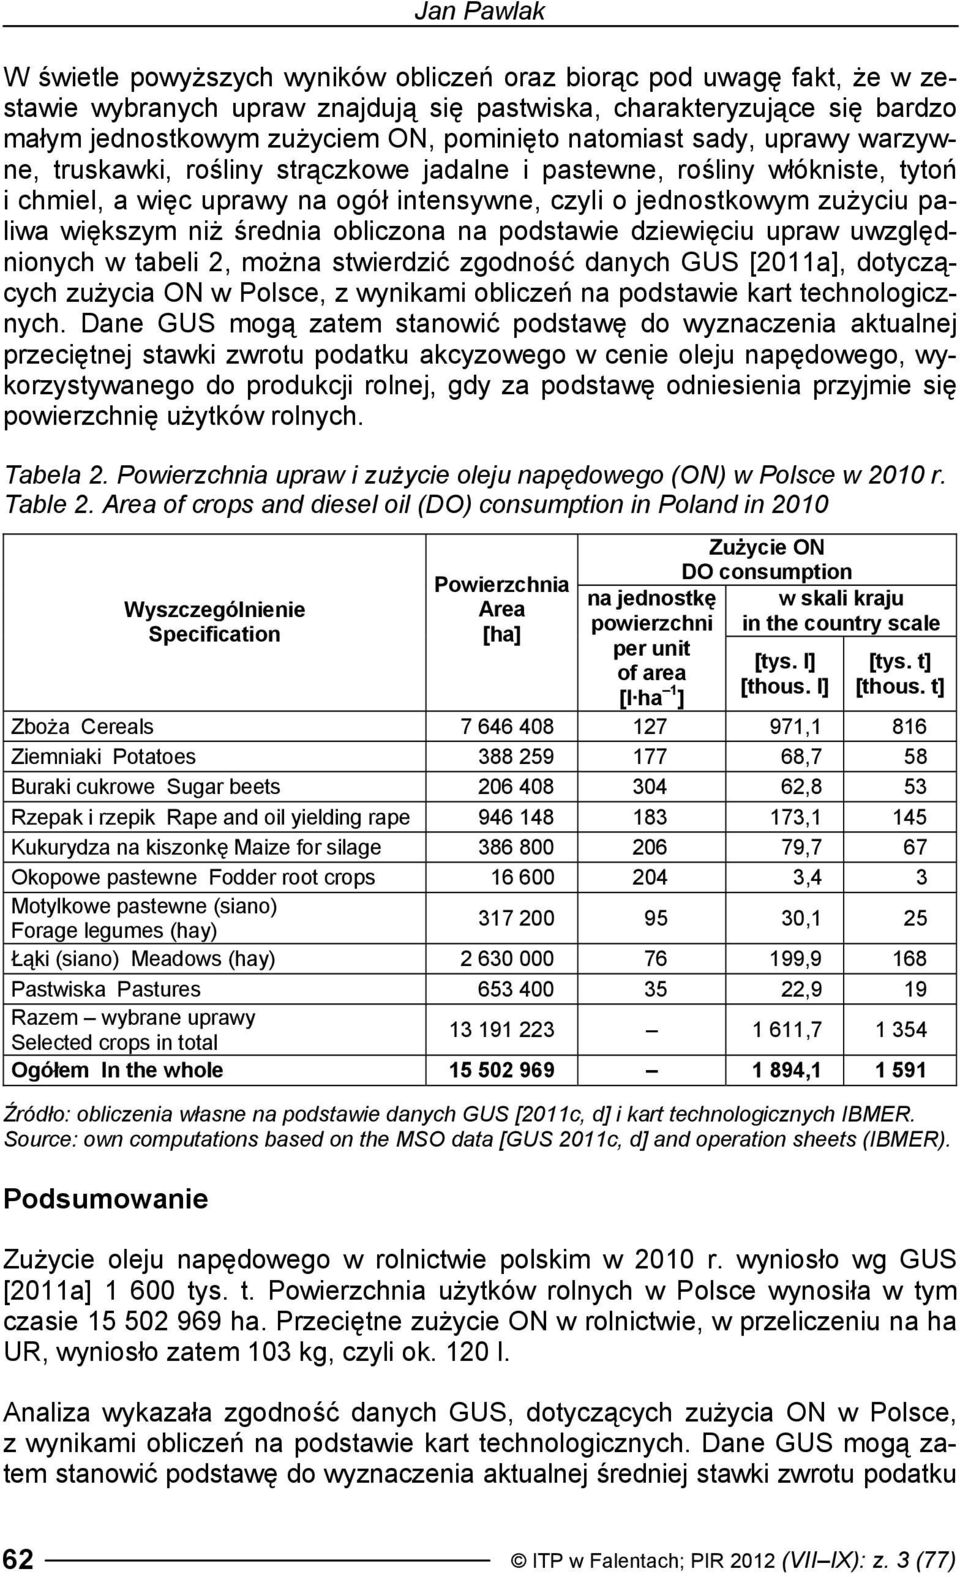 większym niż średnia obliczona na podstawie dziewięciu upraw uwzględnionych w tabeli 2, można stwierdzić zgodność danych GUS [2011a], dotyczących zużycia ON w Polsce, z wynikami obliczeń na podstawie